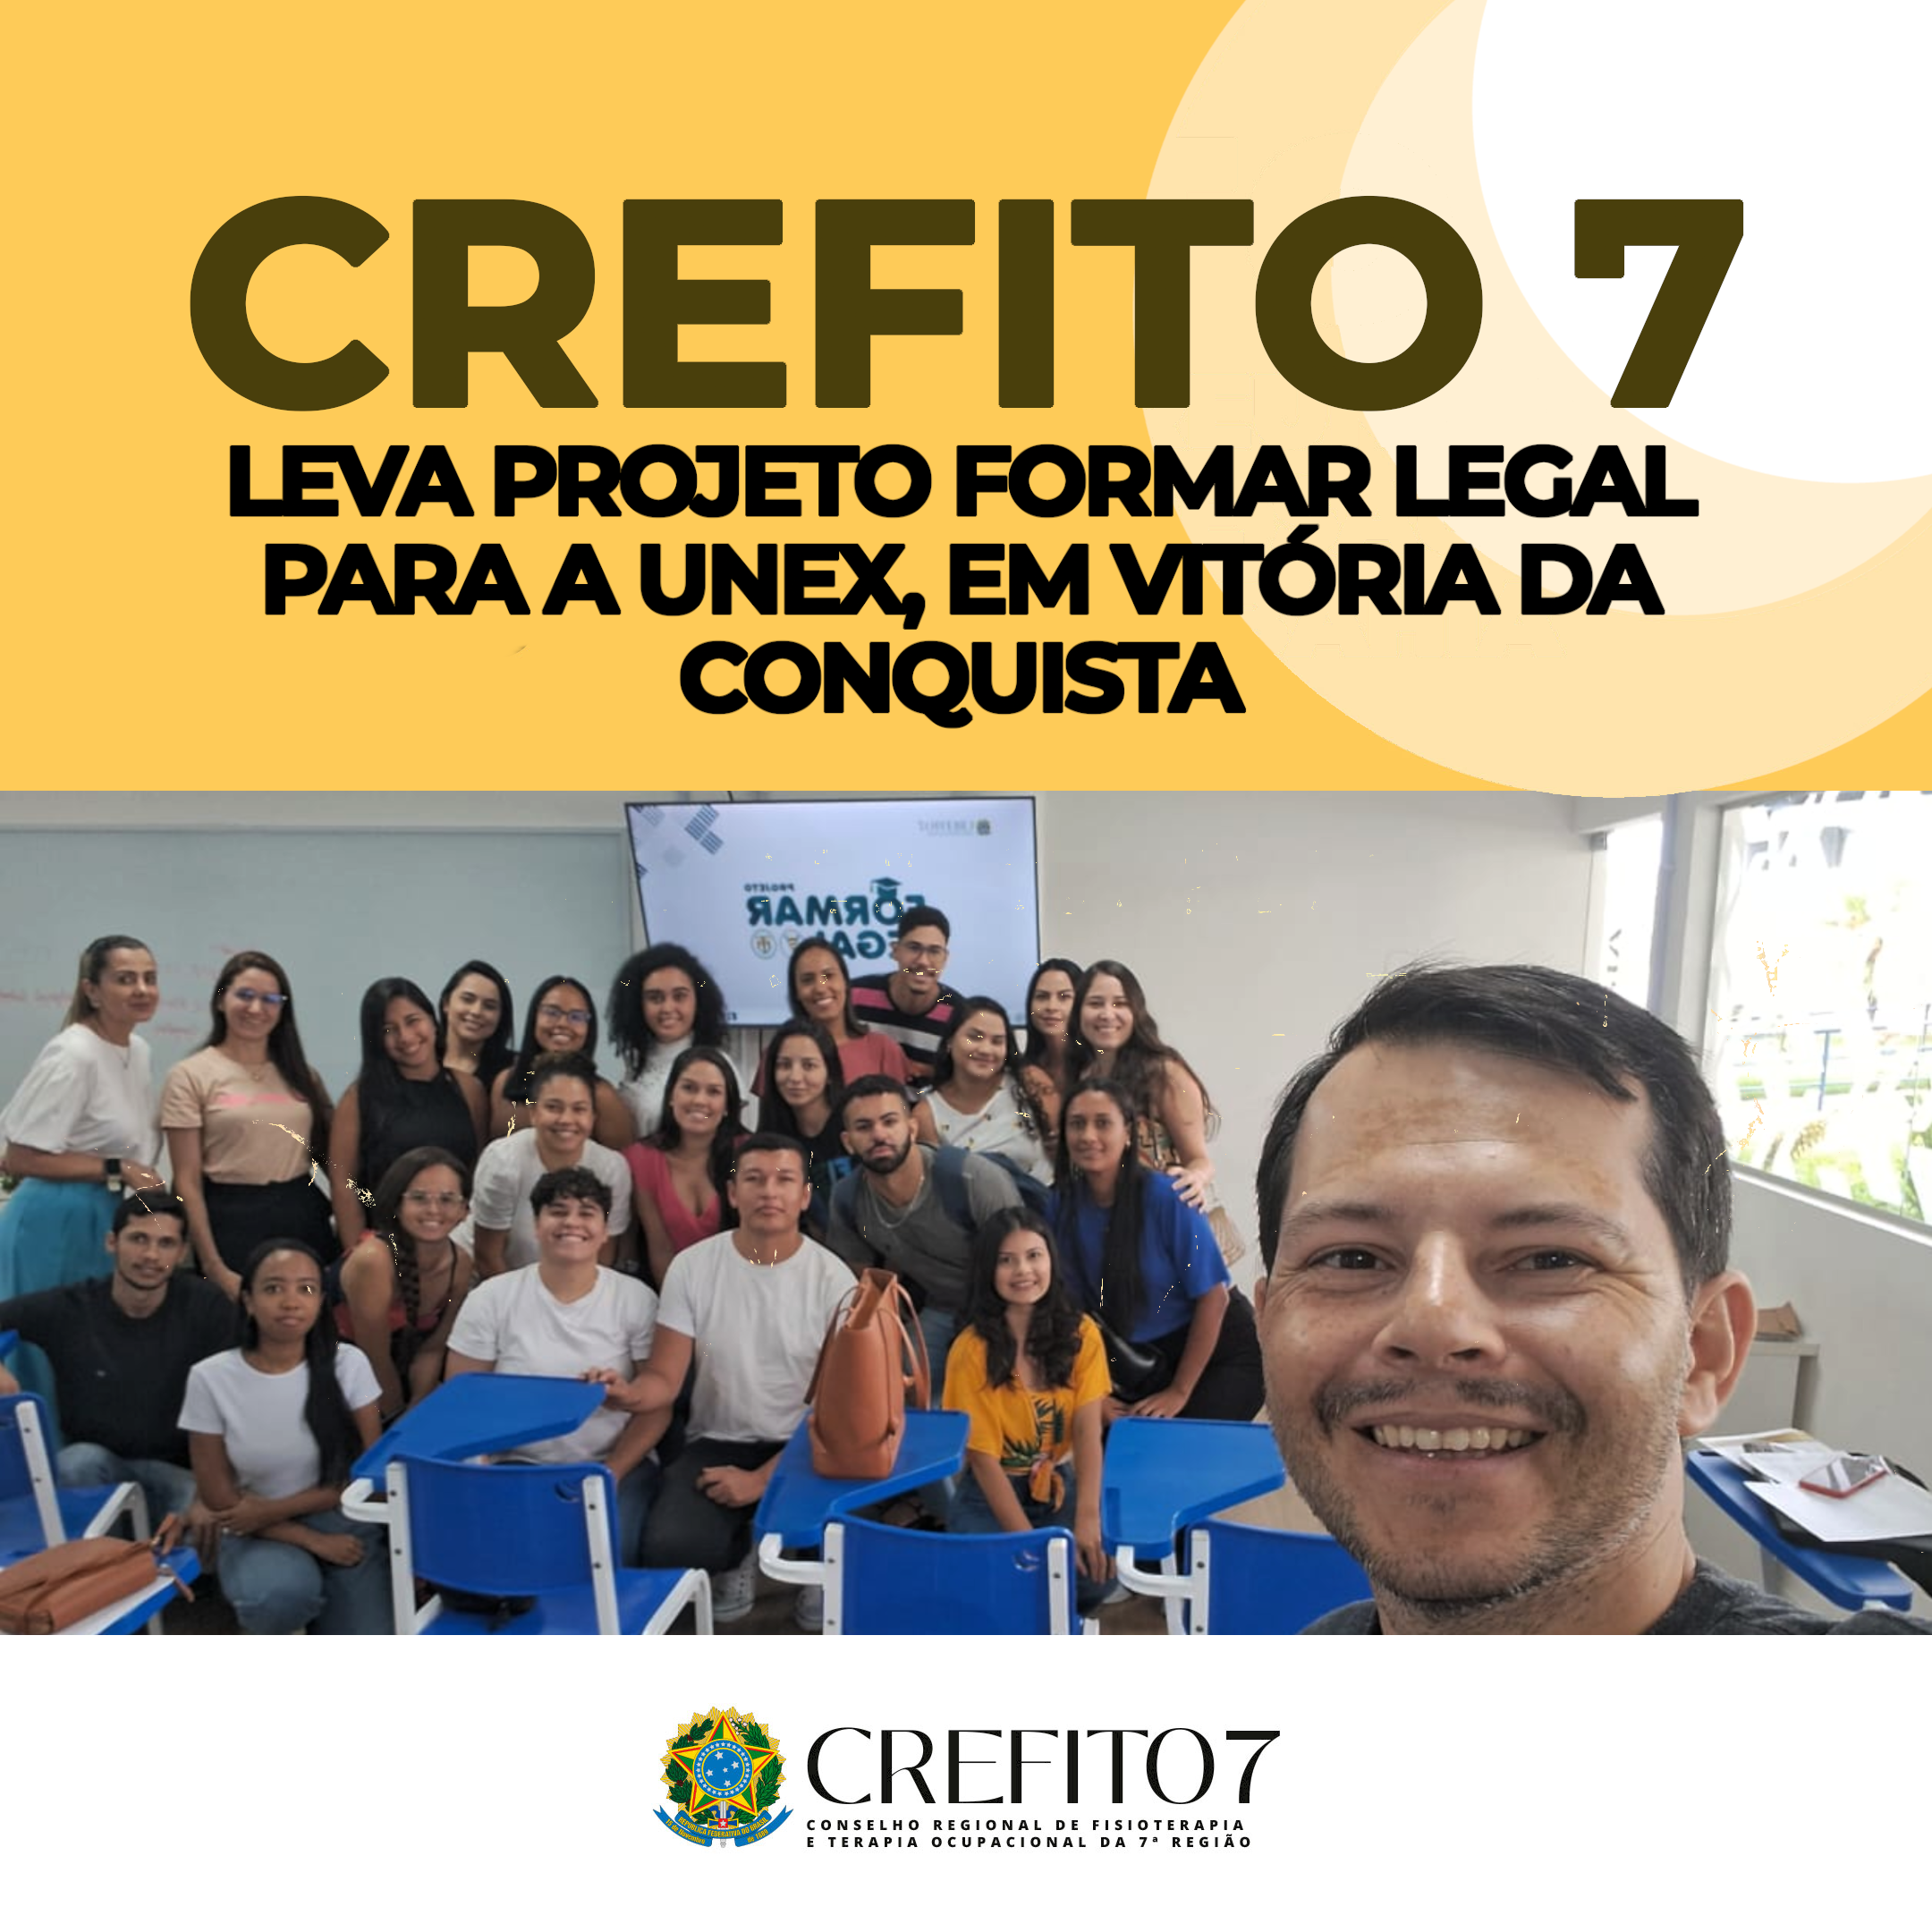 CREFITO-7 LEVA PROJETO FORMAR LEGAL PARA A UNEX, EM VITÓRIA DA CONQUISTA